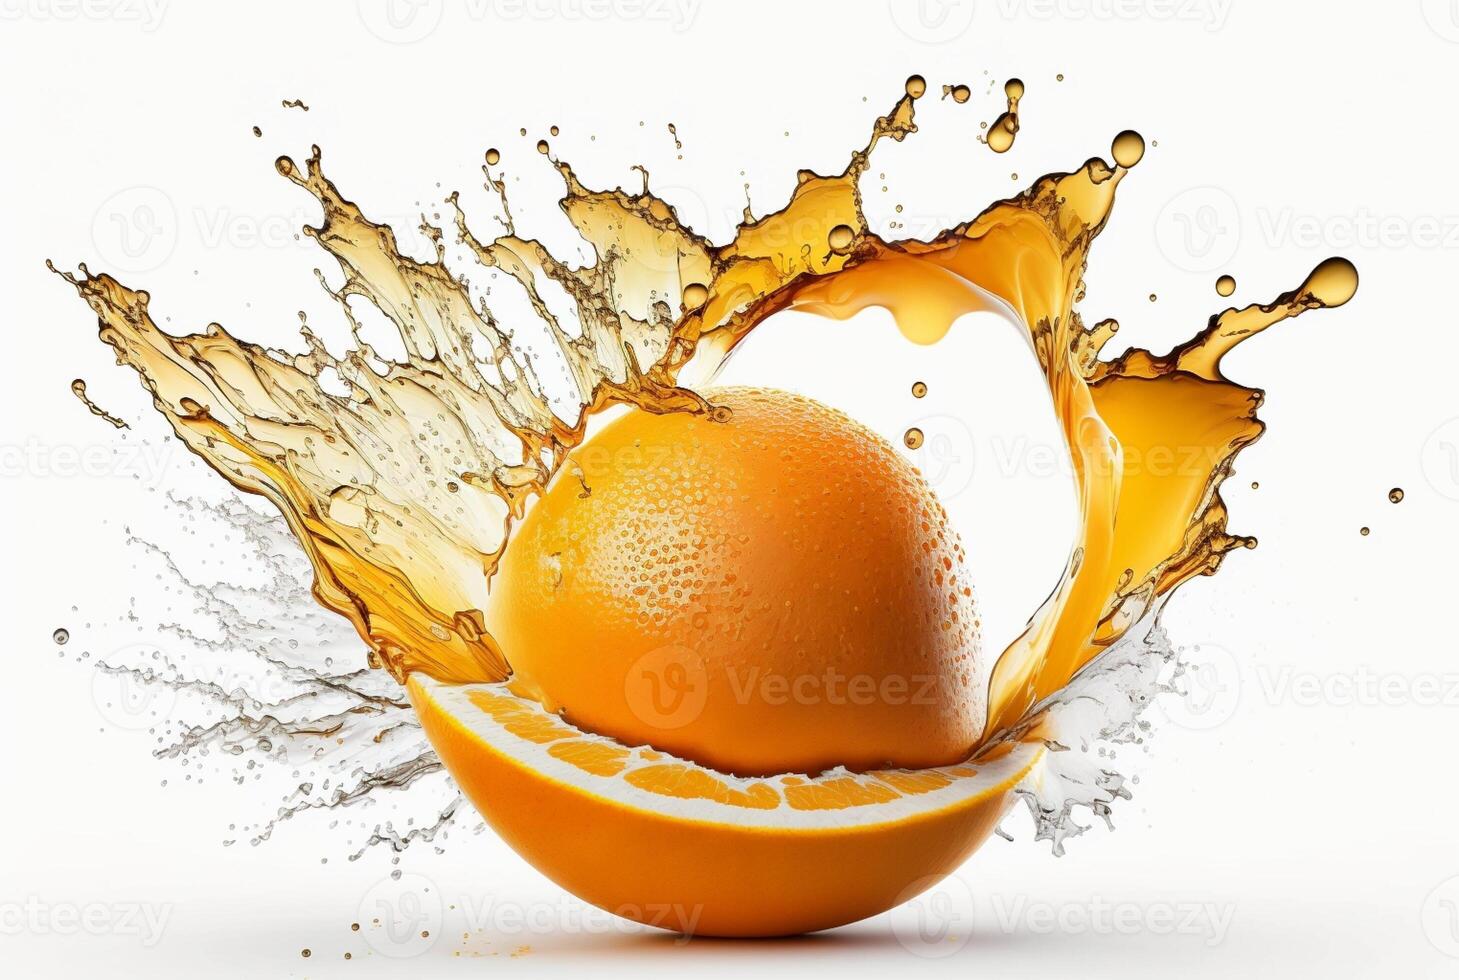 Orange slice with orange juice splash isolated on white background, photo